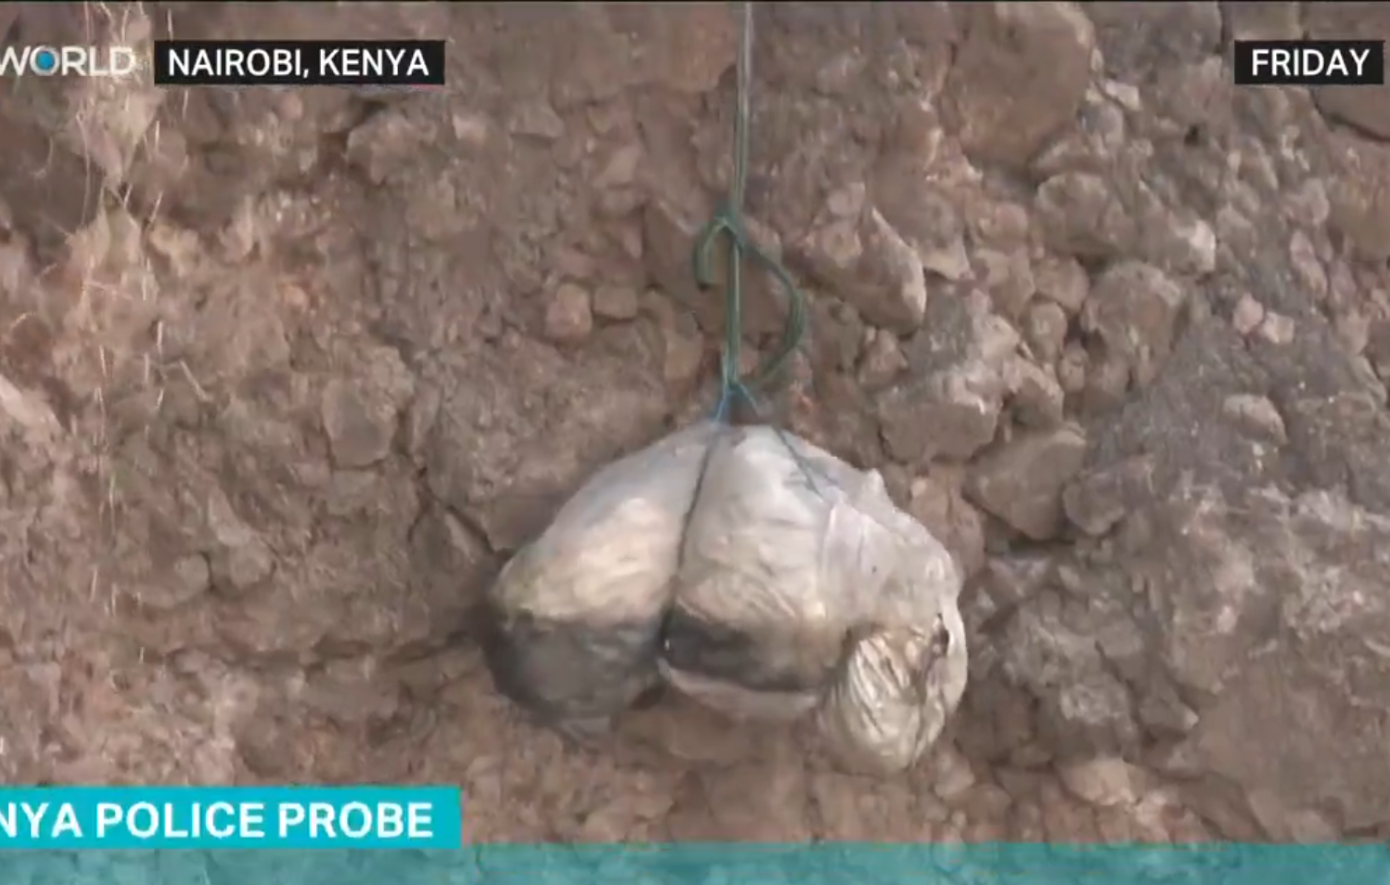 Κένυα: Άλλοι τρεις σάκοι με διαμελισμένα πτώματα βρέθηκαν σε χωματερή